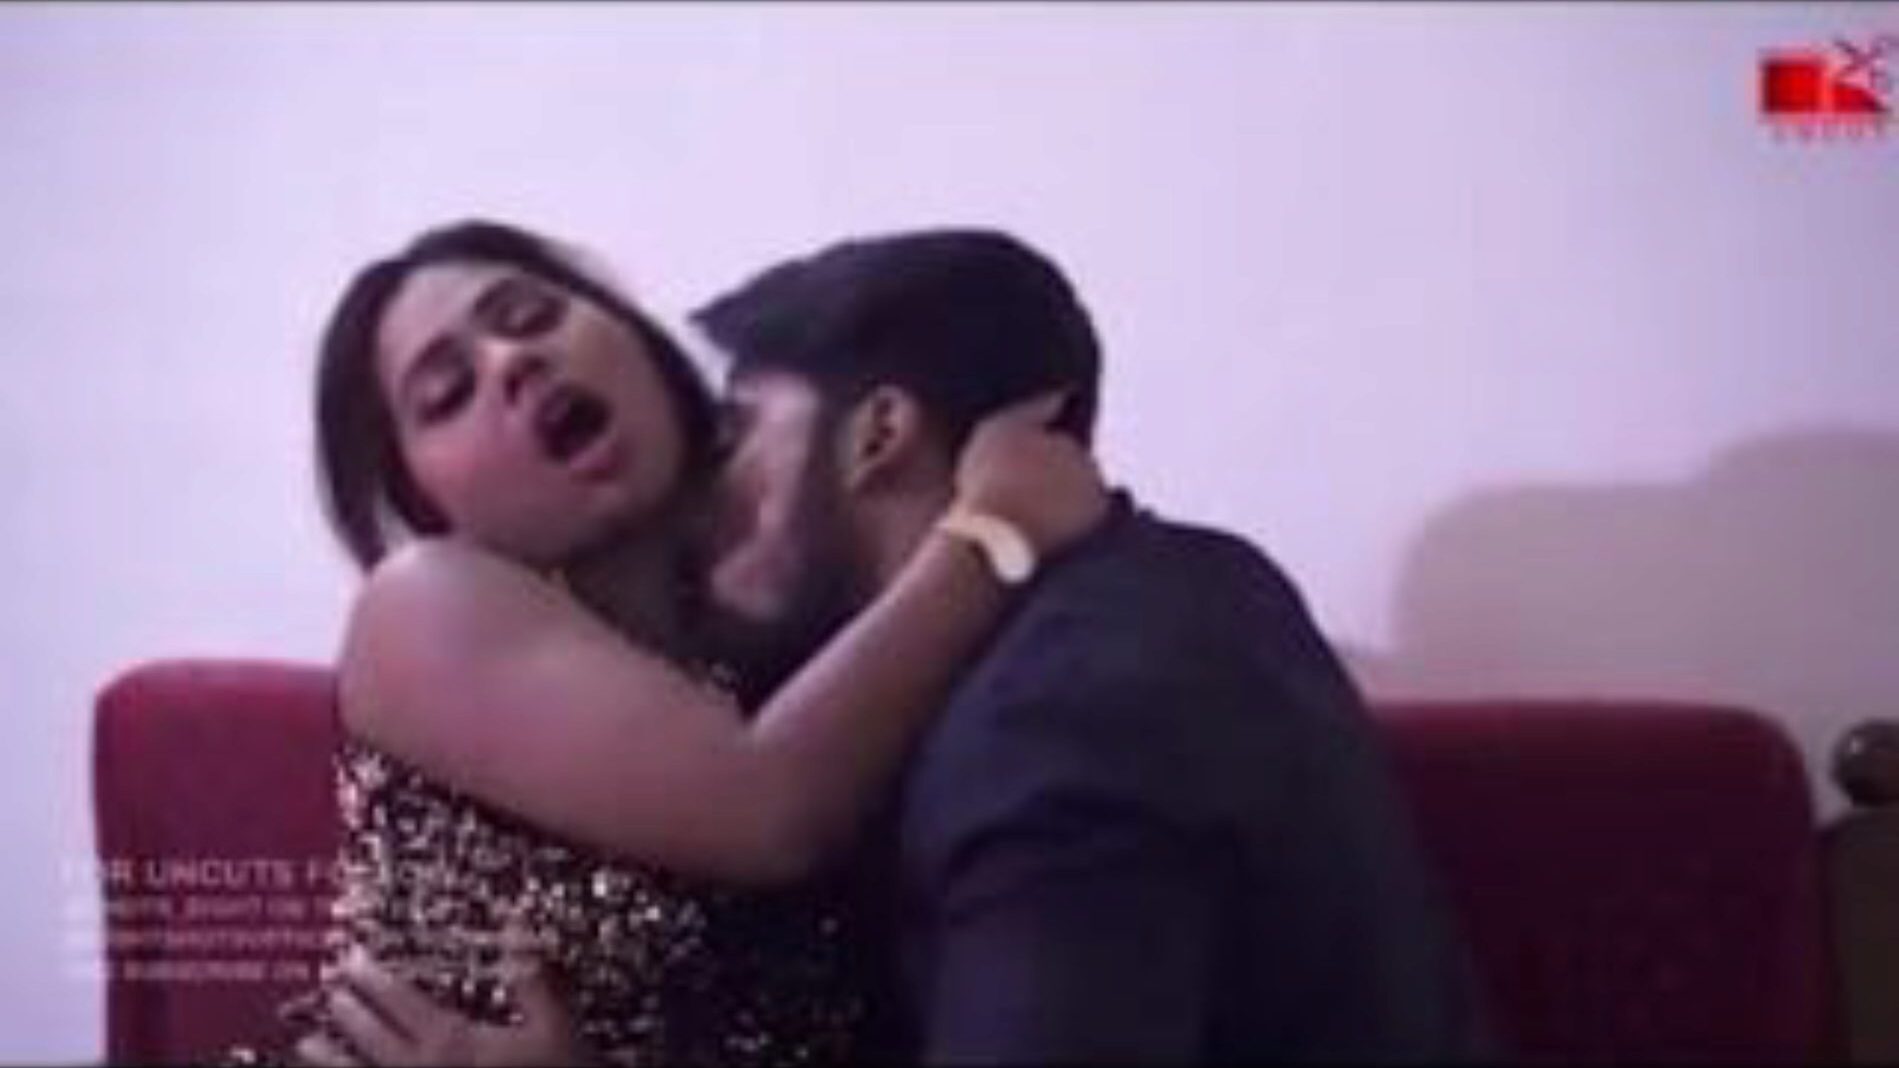 indická manželka v prdeli před manželem v hindštině chudai ... sledovat indická manželka v prdeli před manželem v hindštině chudai film na xhamster - konečný hejno bezplatných asijských indických videí zdarma porno videa